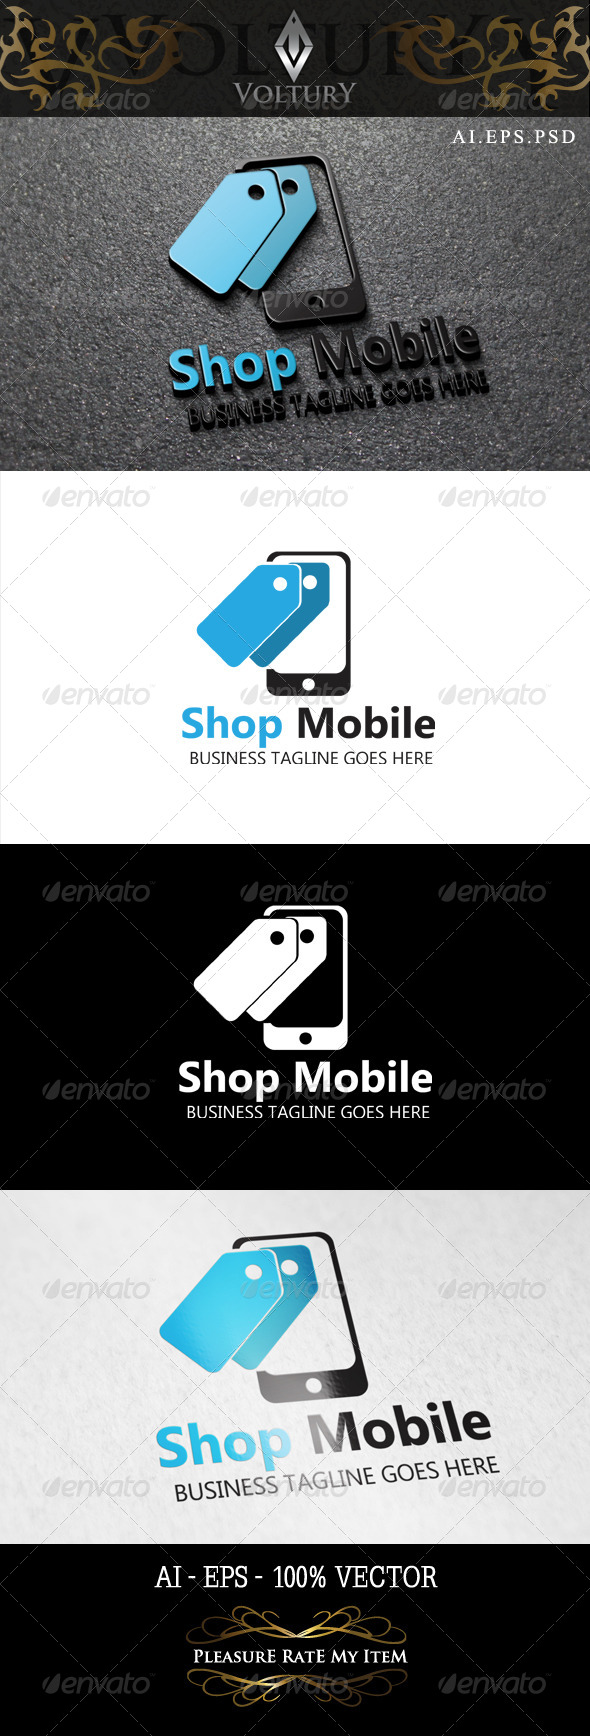 Shop Mobile Logo